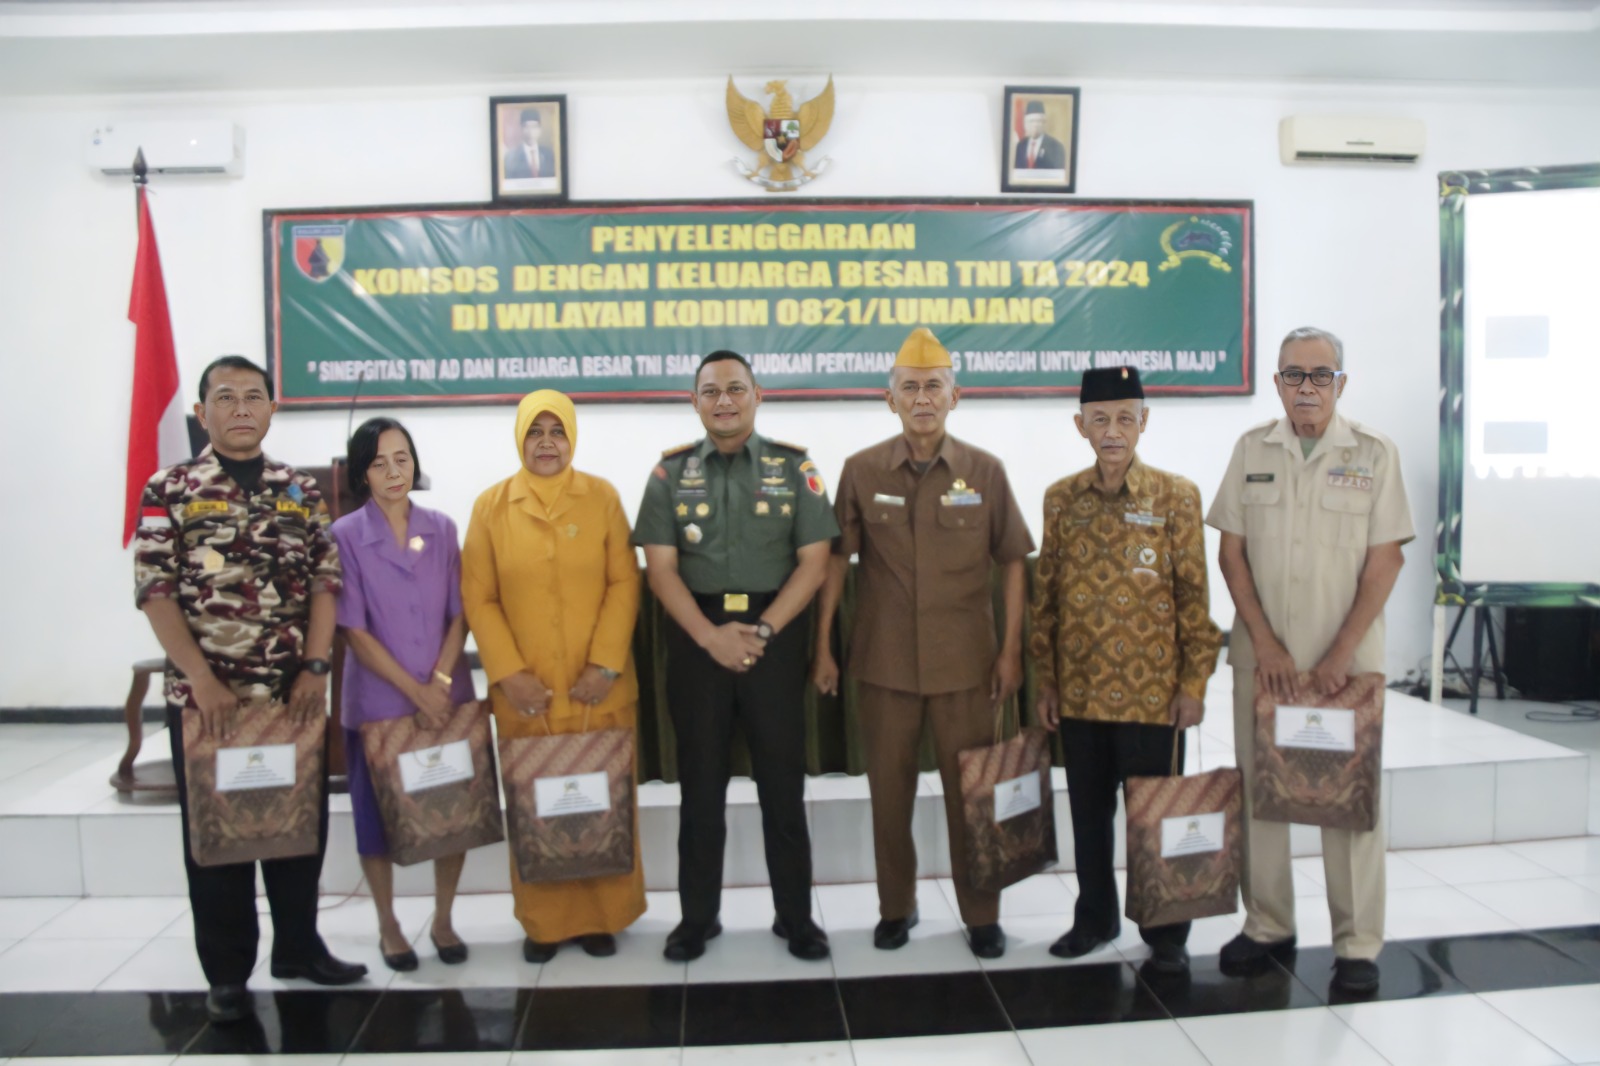 Pererat Silaturahmi, Kodim 0821/Lumajang Gelar Komsos dengan Keluarga Besar TNI